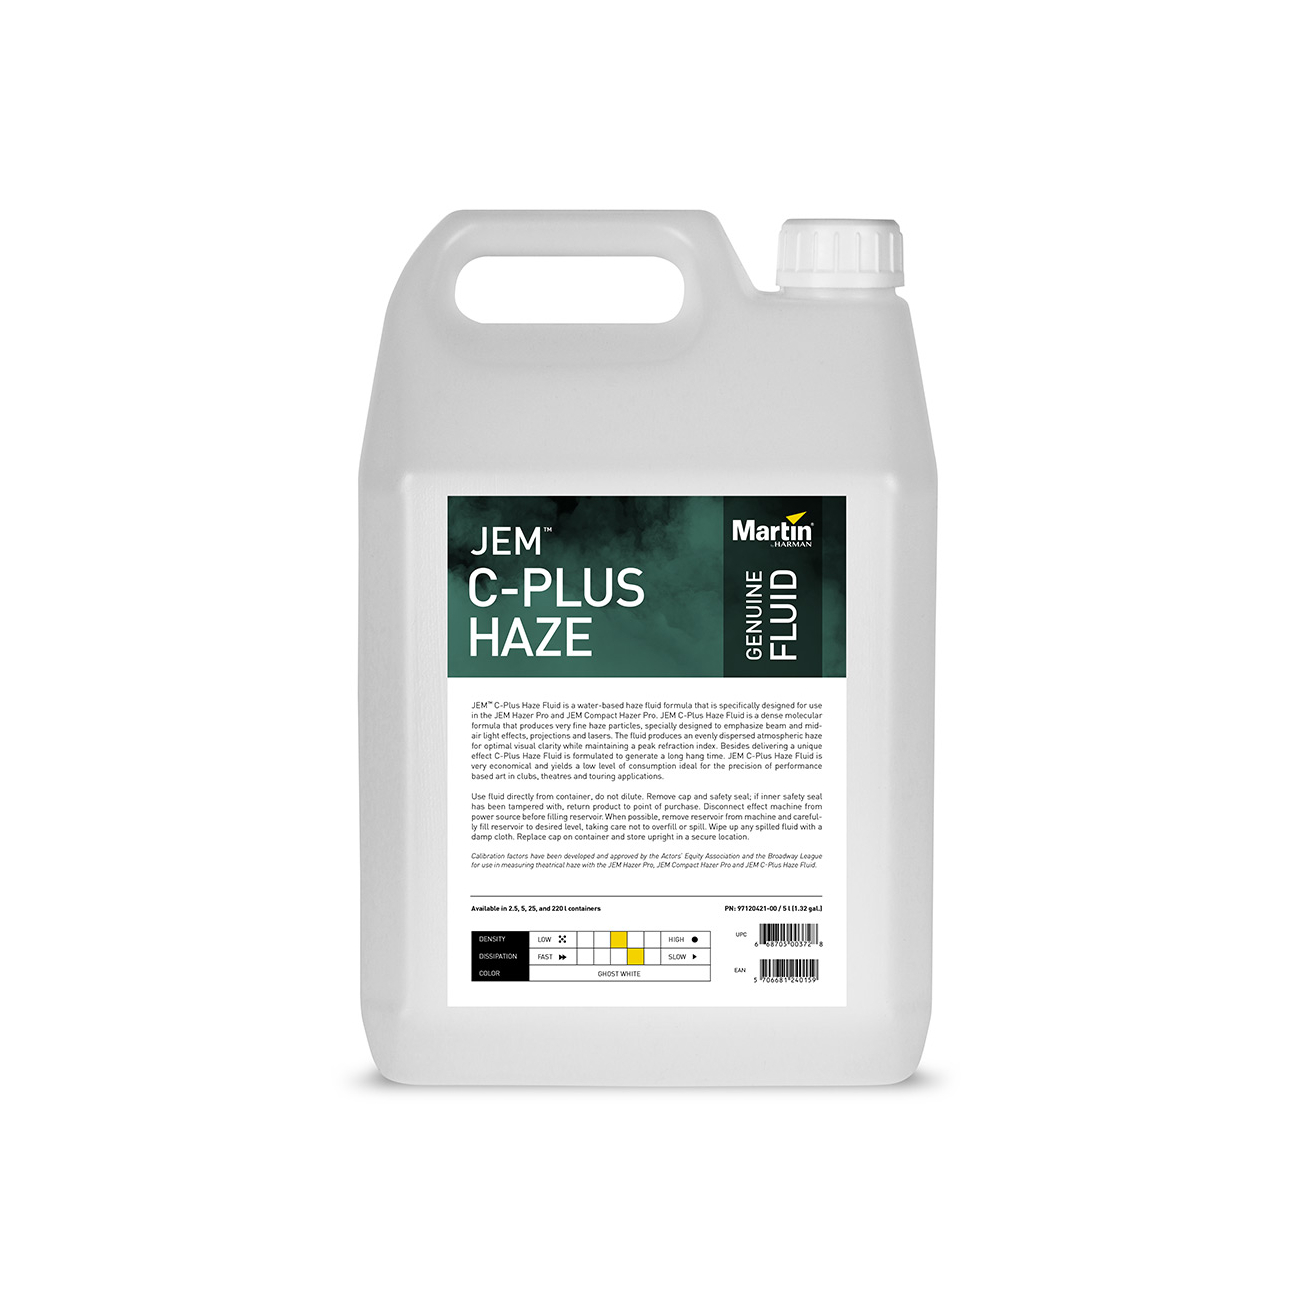 MARTIN JEM C-Plus Haze Fluid Жидкость для генератора тумана, 5 литров